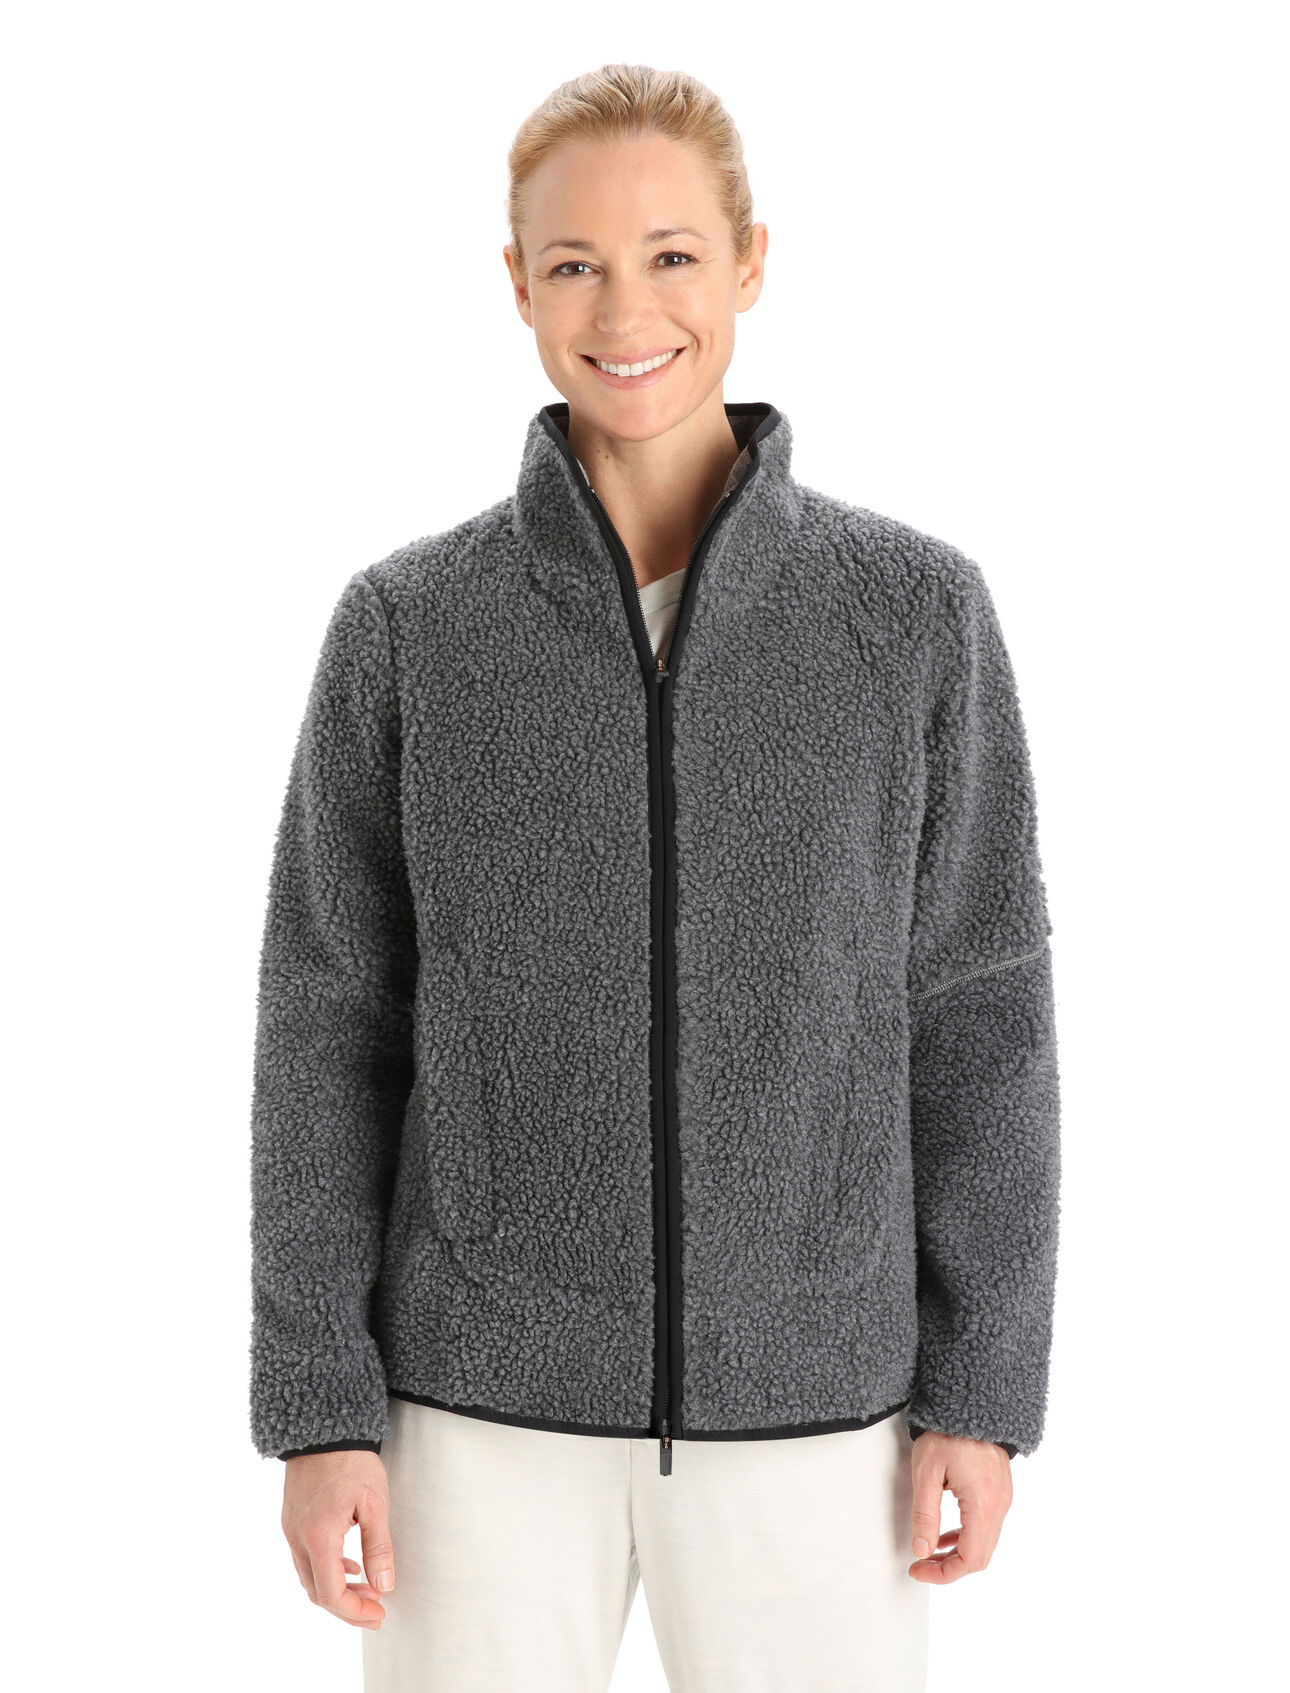 RealFleece™ Merino High Pile Zip-Jacke Damen Mit klassischem Outdoor-Style und den natürlichen Vorteilen von Merinowolle, die RealFleece™ High Pile Zip-Jacke ist ein warmer, stylisher und ultrakomfortabler Fleece, der für urbane Abenteuer ideal ist. 